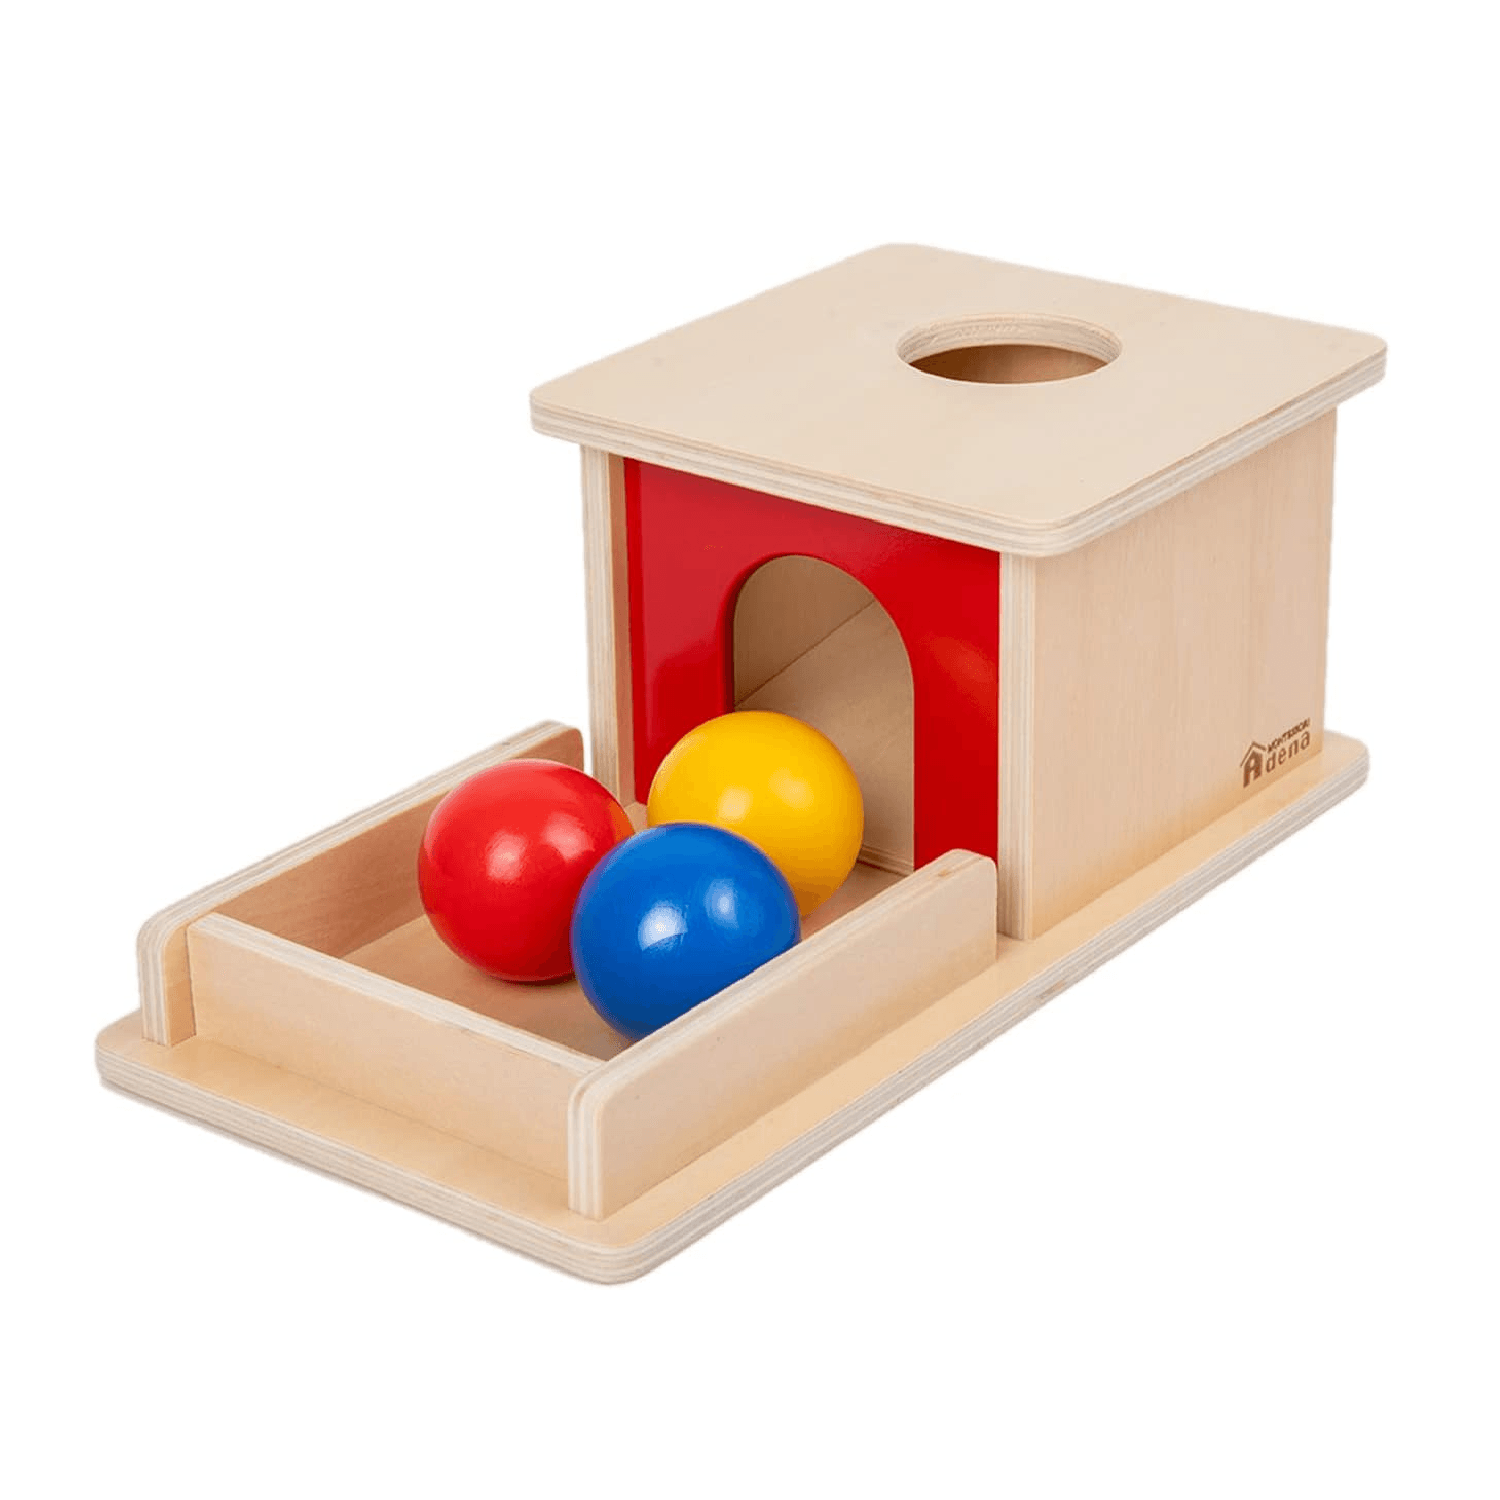 Montessori Adena Montessori Full Size Object Permanence Box With Tray Three Balls Classic